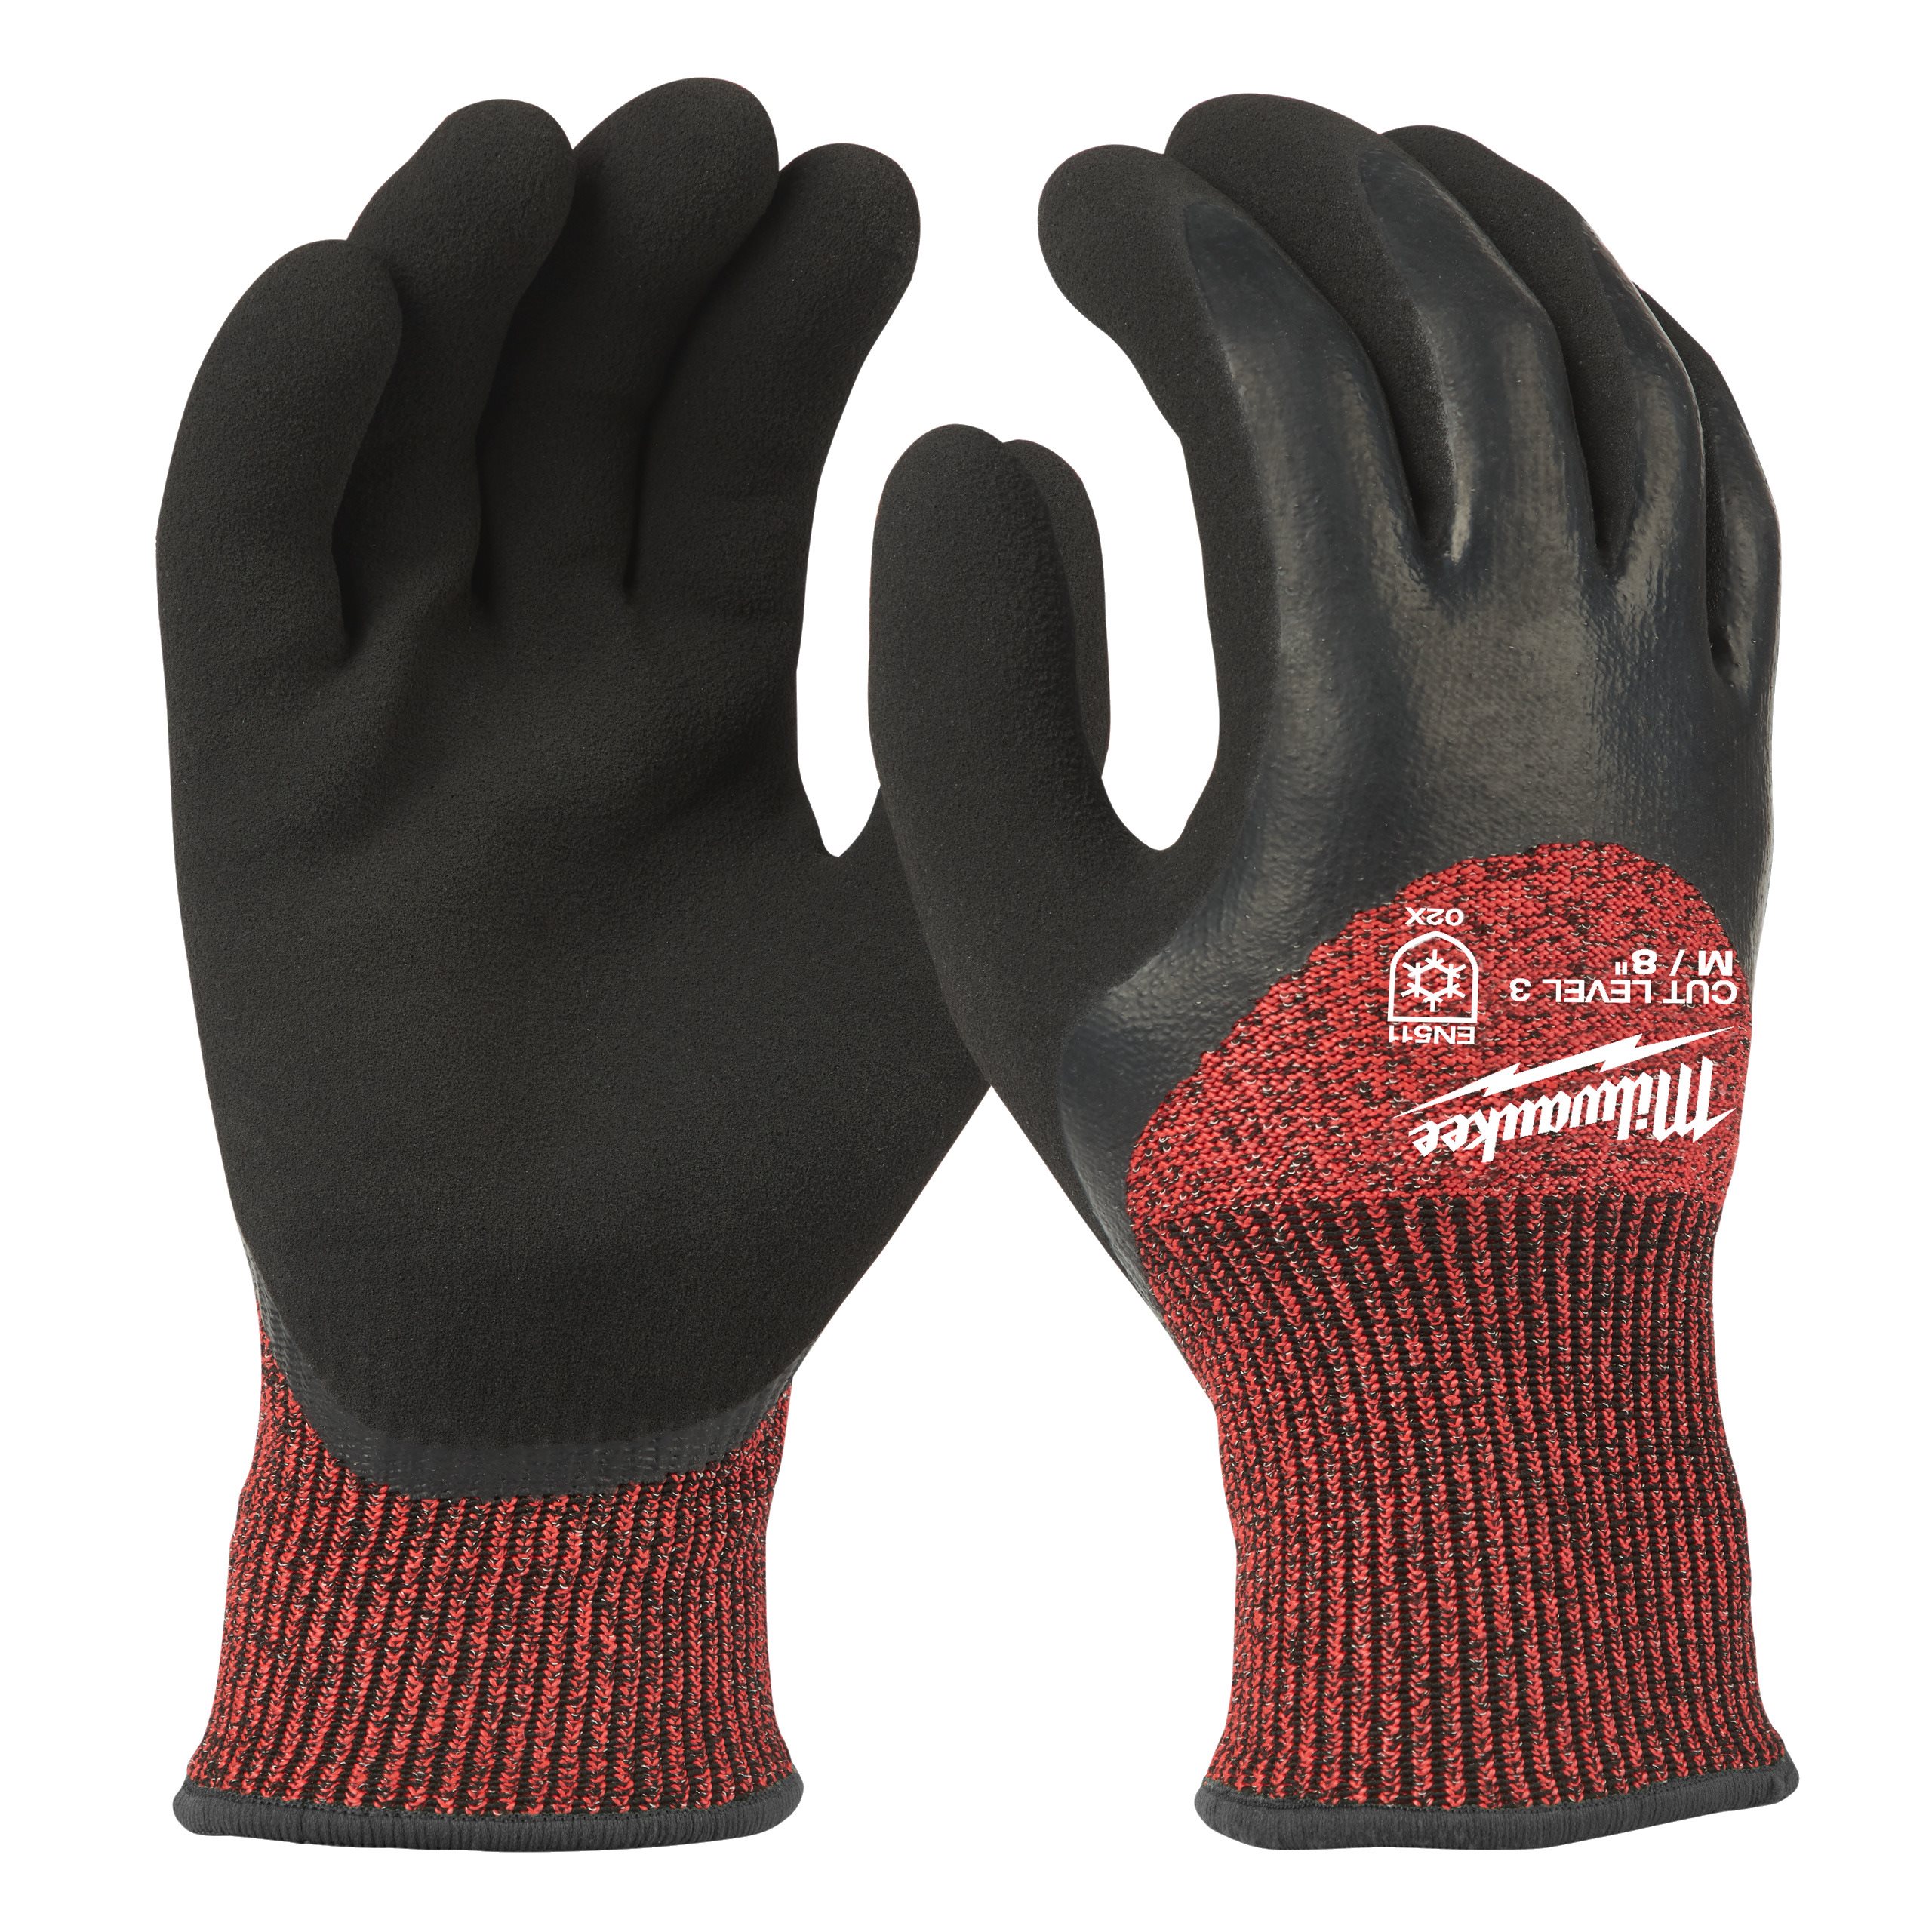 Zimní povrstvené rukavice s třídou ochrany proti proříznutí 3/C